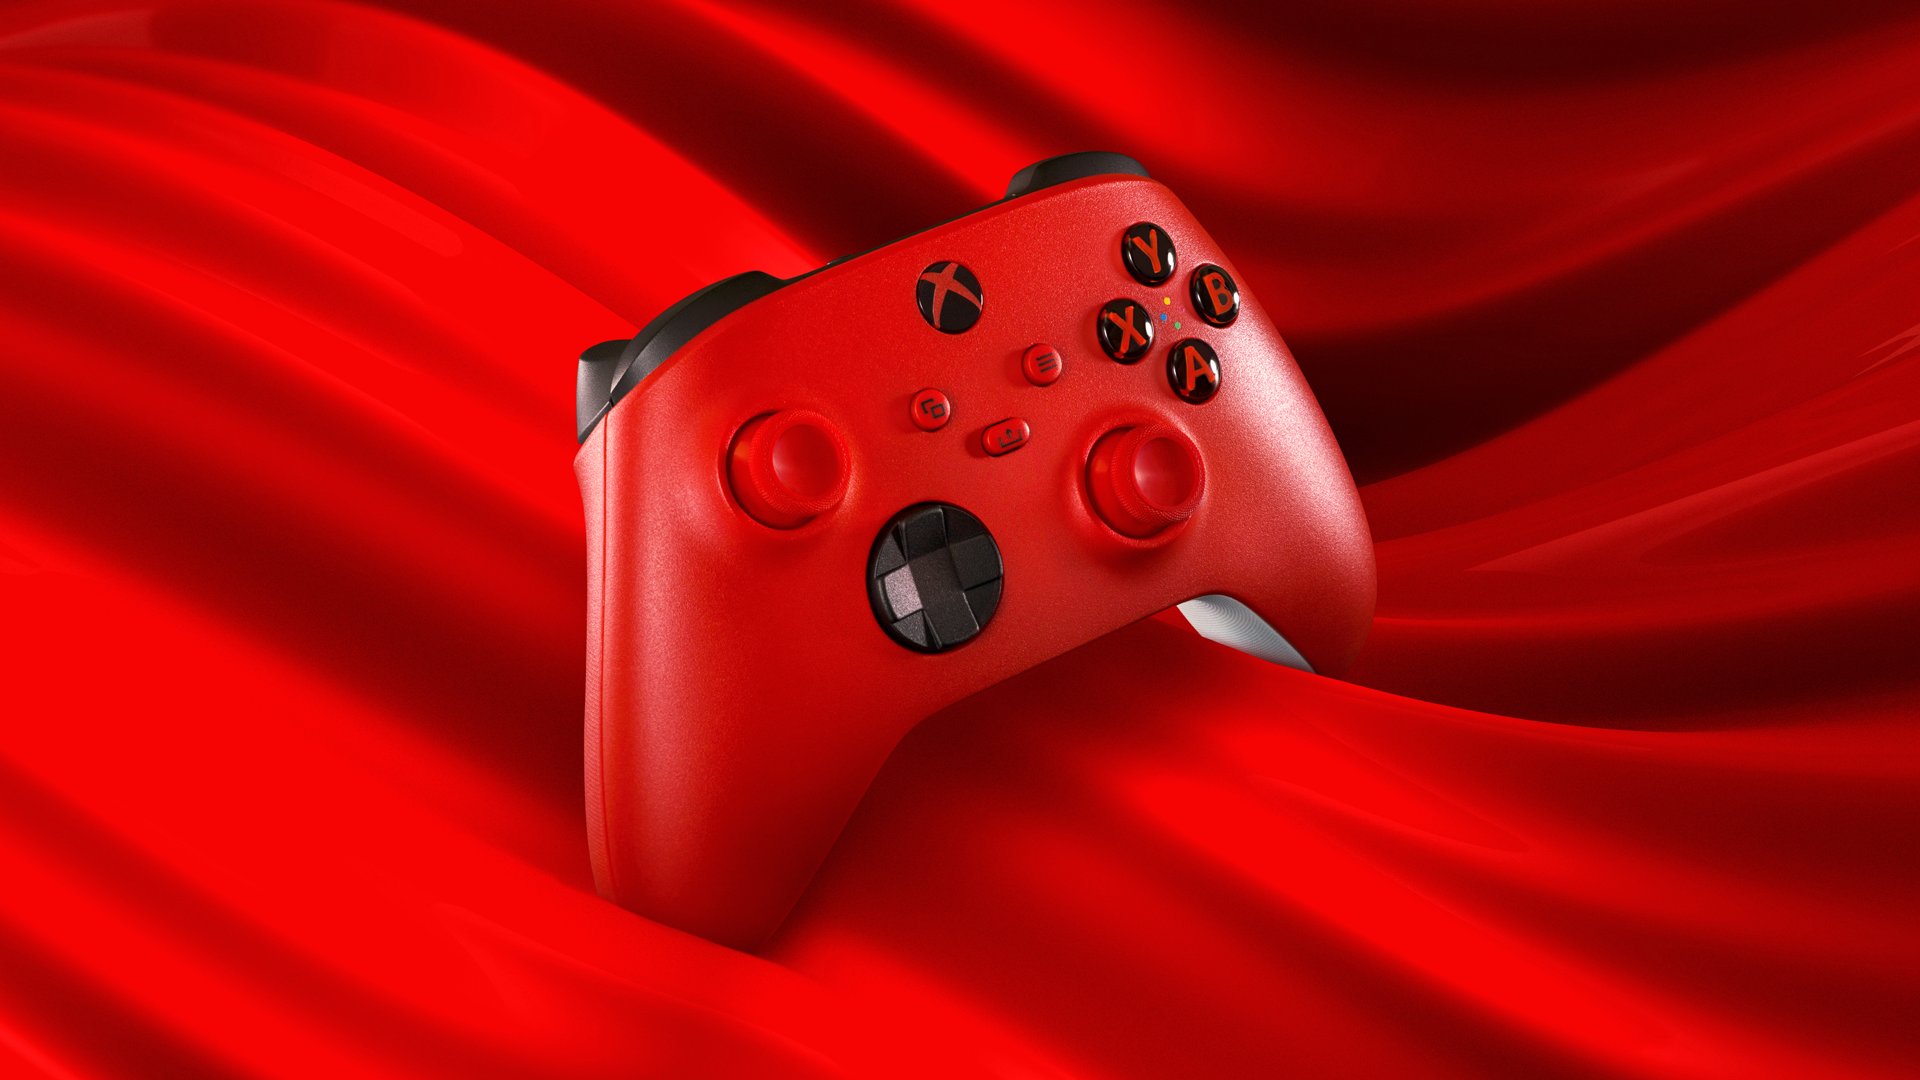 Tay cầm Xbox Pulse Red là một thiết kế tuyệt vời, góp phần tạo nên phong cách riêng biệt và đầy cá tính. Thiết bị có chất lượng tốt cùng nhiều chức năng hữu ích, giúp bạn trải nghiệm trò chơi thật tuyệt vời.